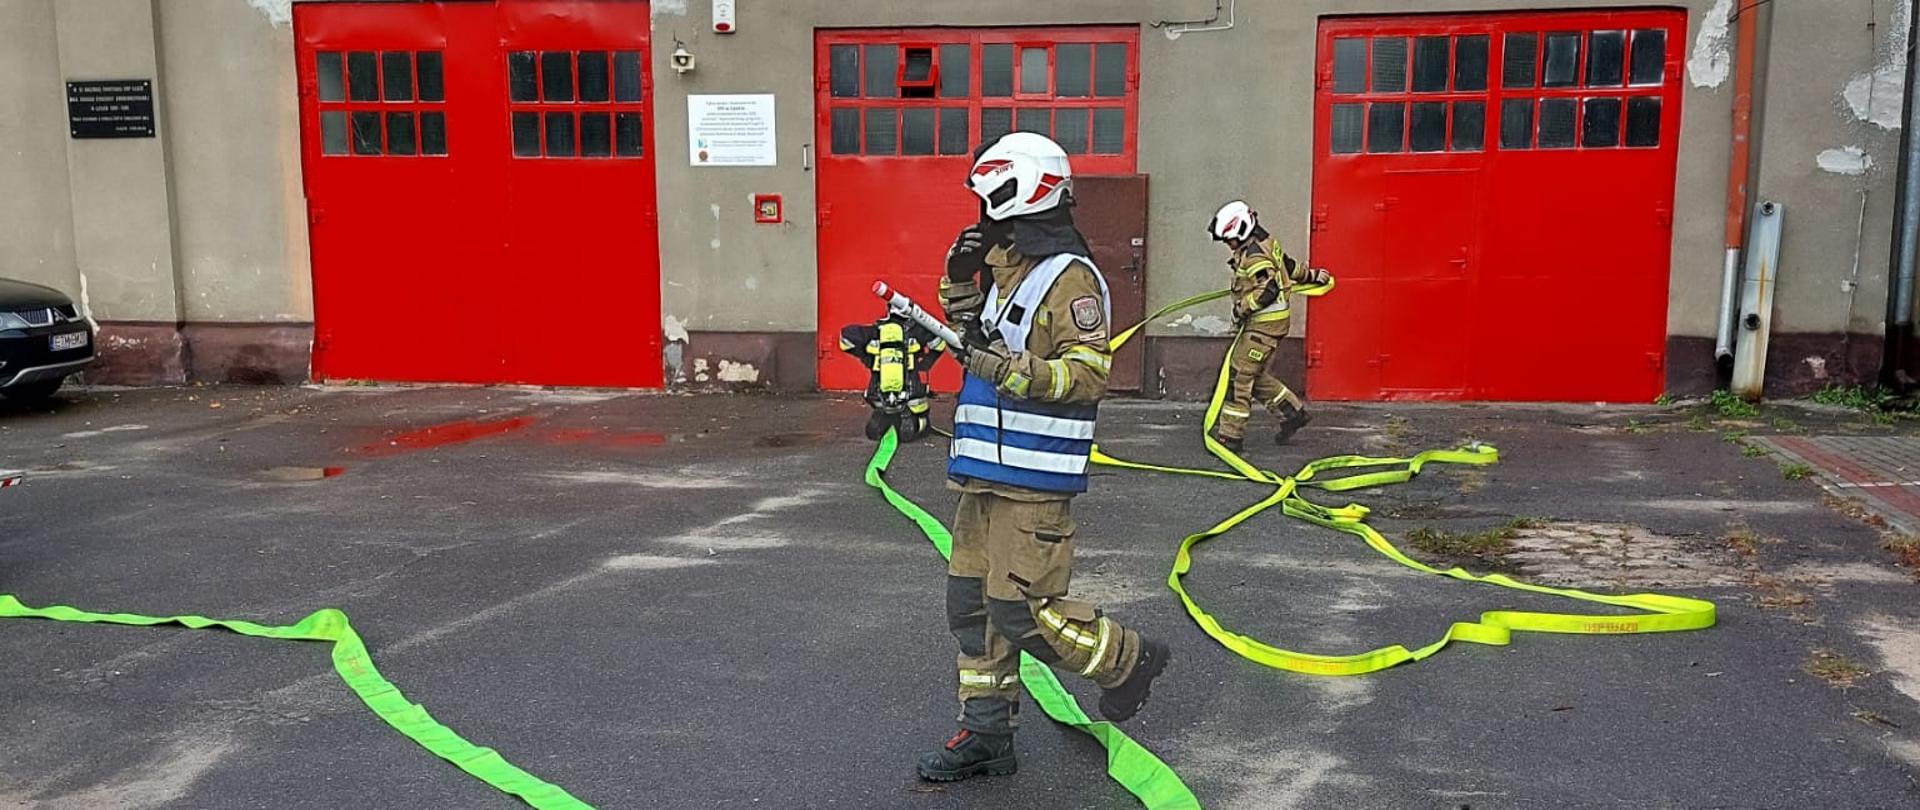 Przed budynkiem strażnicy strażacy rozwijają na asfaltowym podłożu jasno zielone węże pożarnicze.